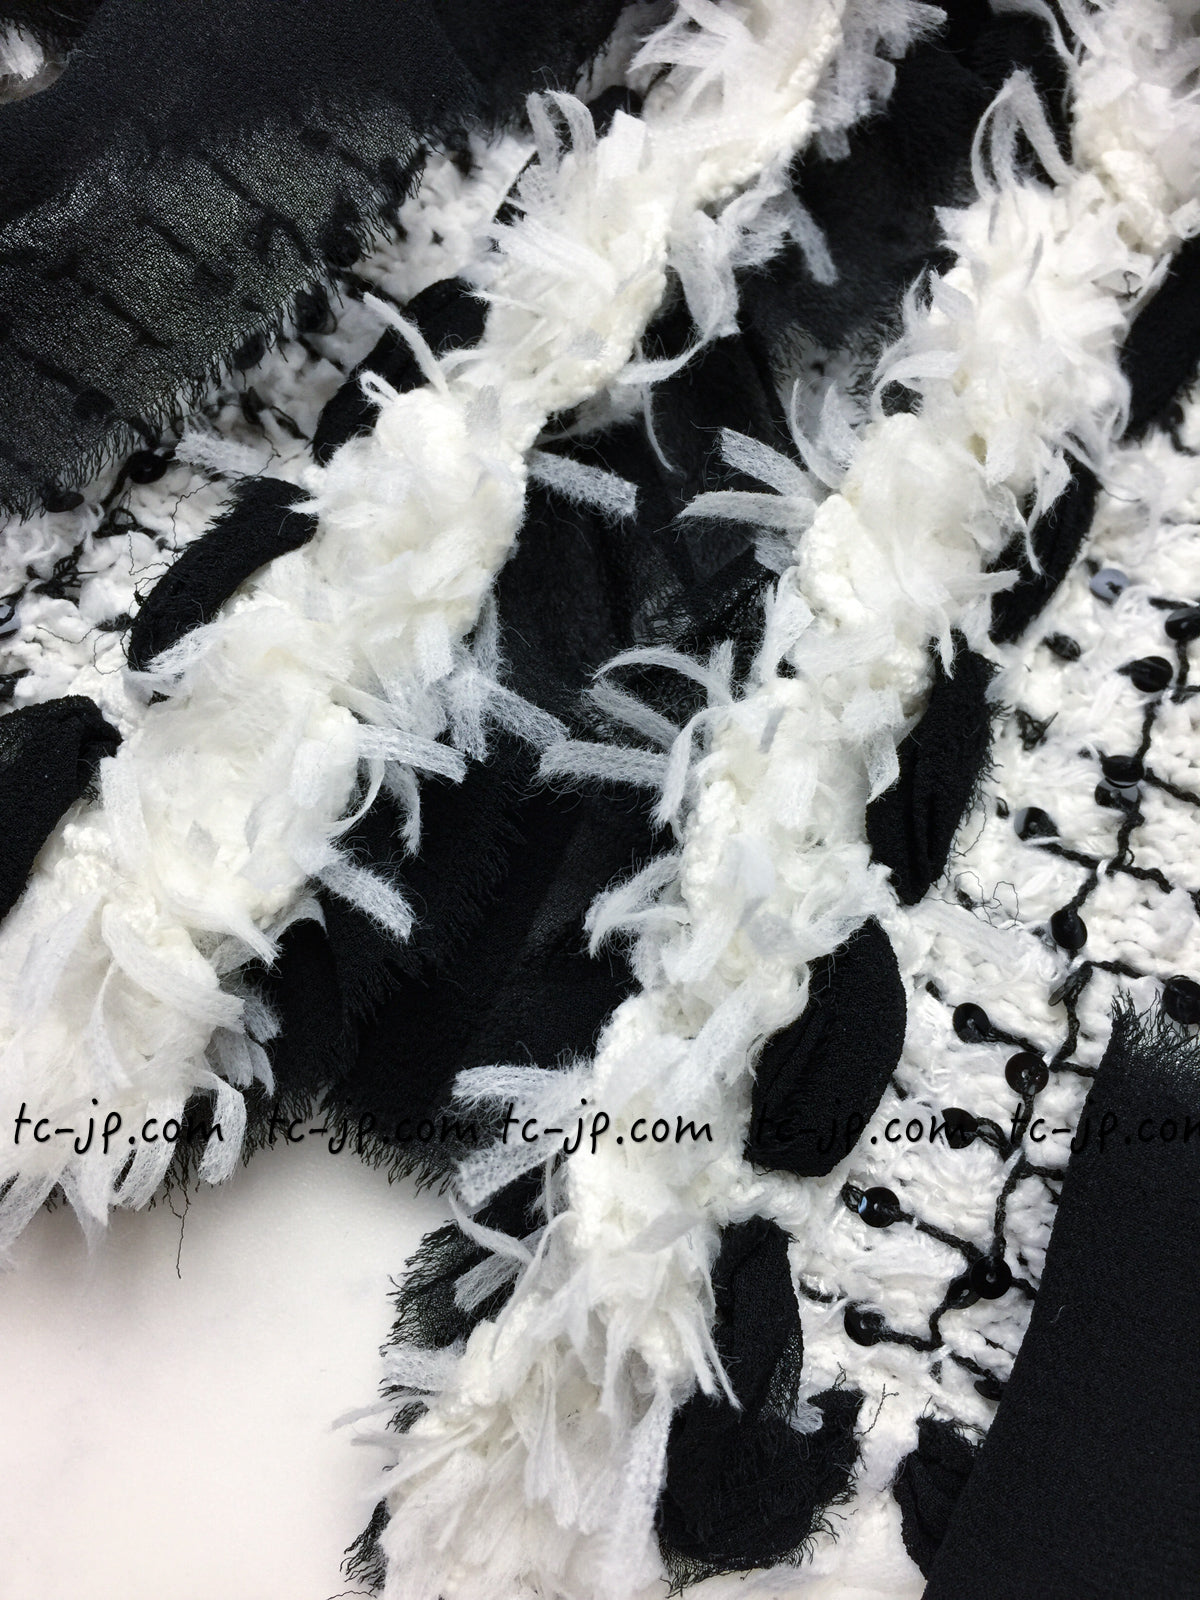 CHANEL 05S White Black Tweed Cardigan Jacket Skirt 34 36 38 42 シャネル ホワイト・ブラックリボン・ツイード・カーディガン・ジャケット・スカート 即発